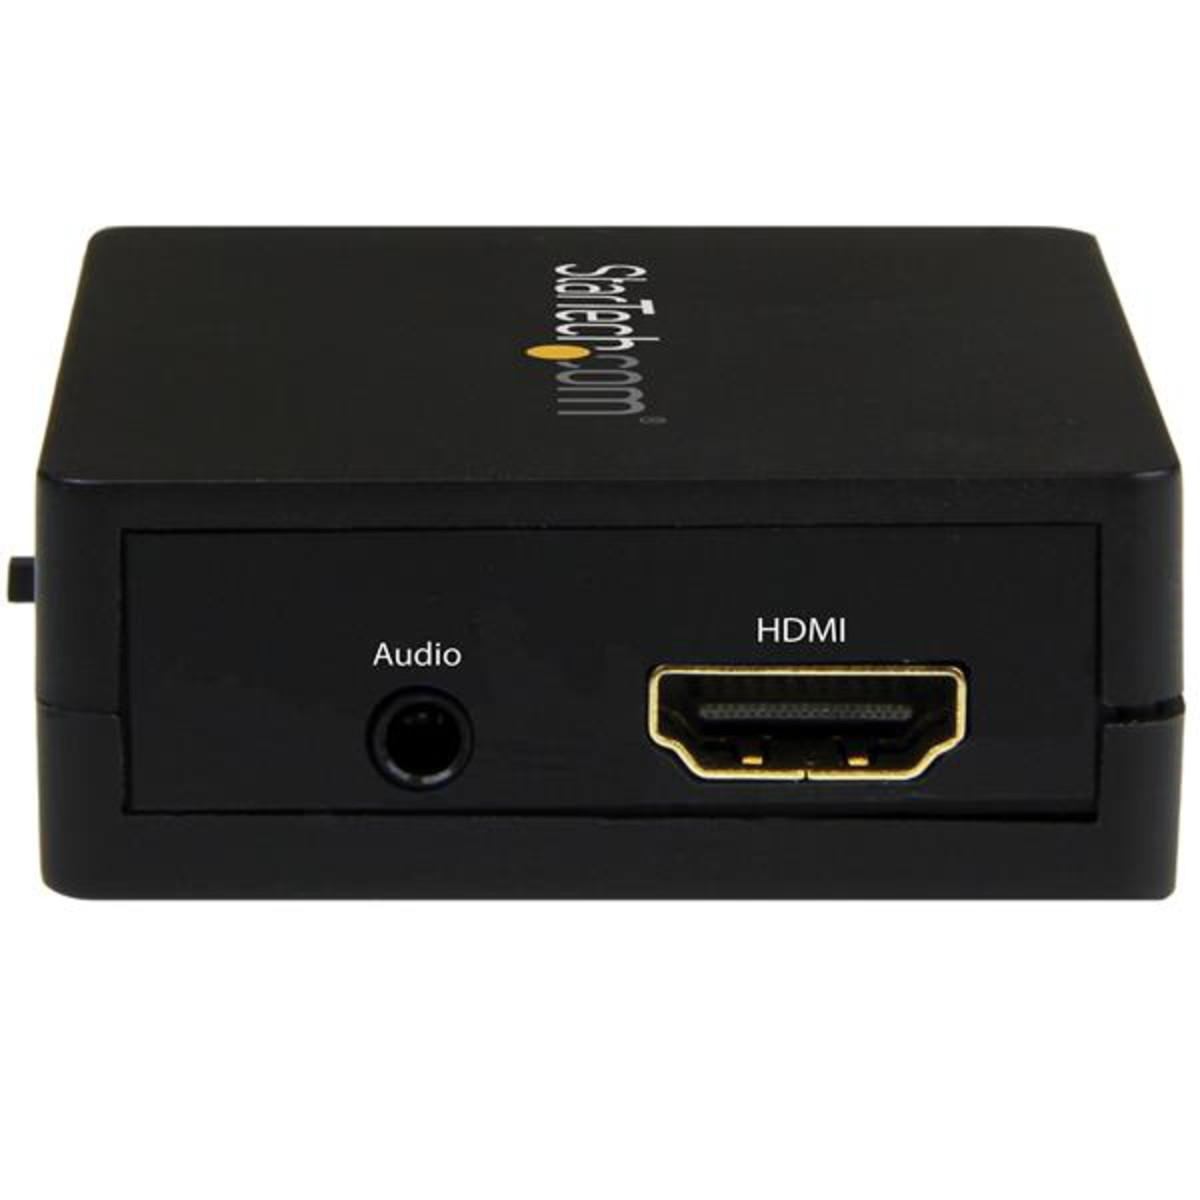 HDMI Audio Extractor - 1080p